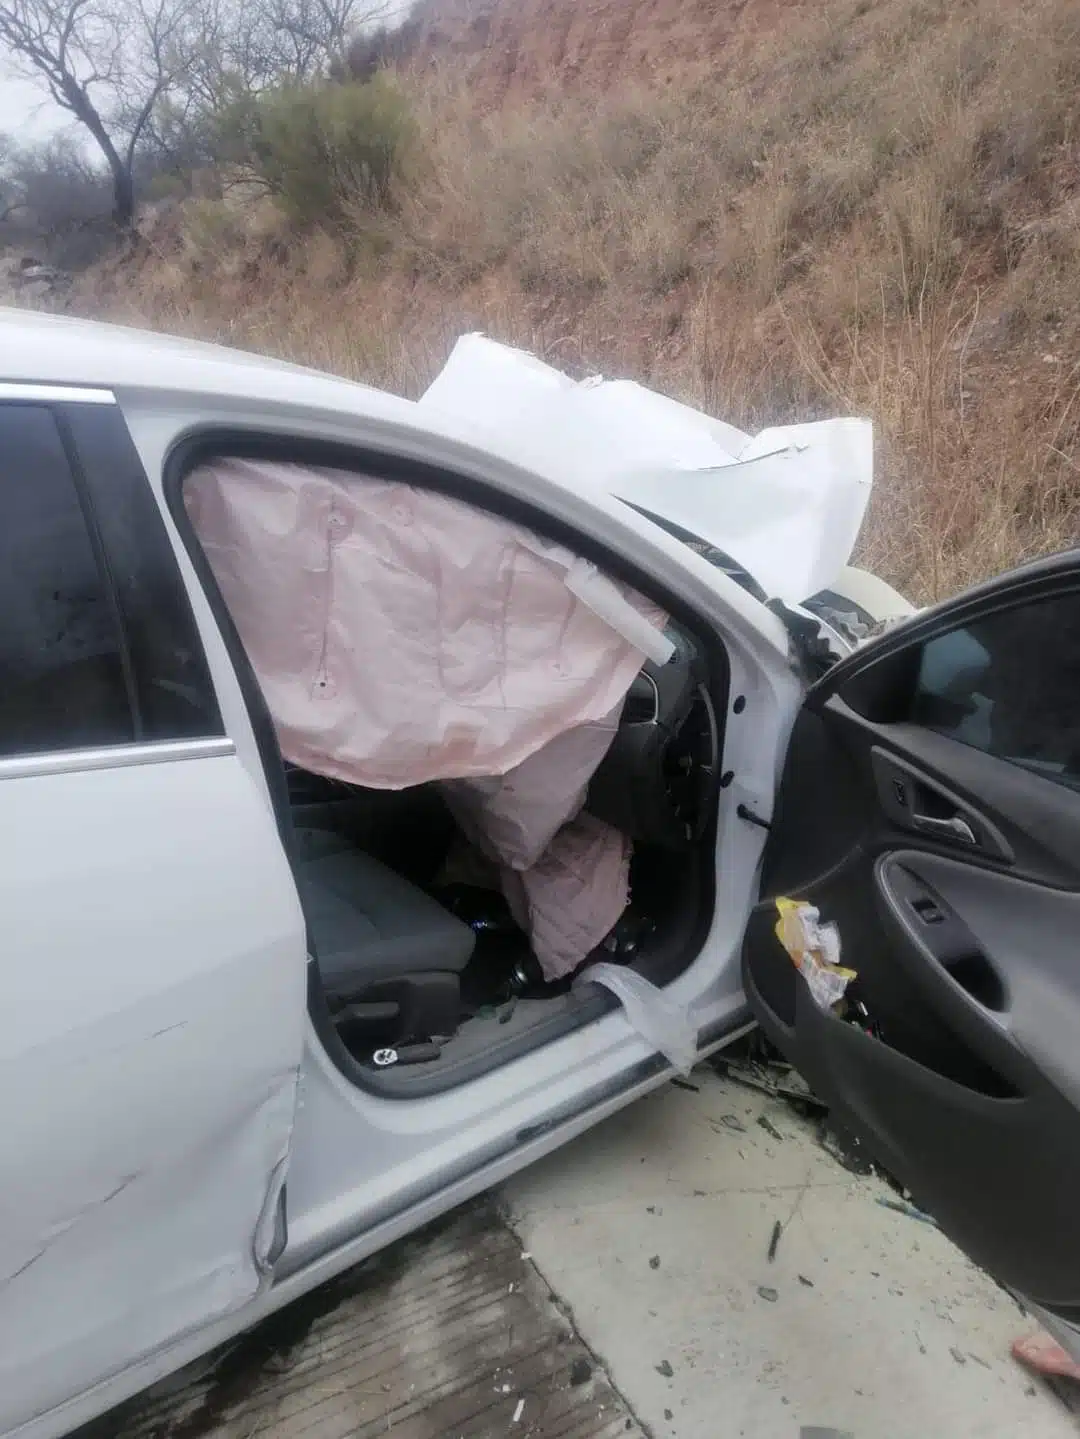 Tragedia: Mueren cinco jóvenes de Culiacán en accidente en Nogales, Sonora; al parecer iban hacia EU